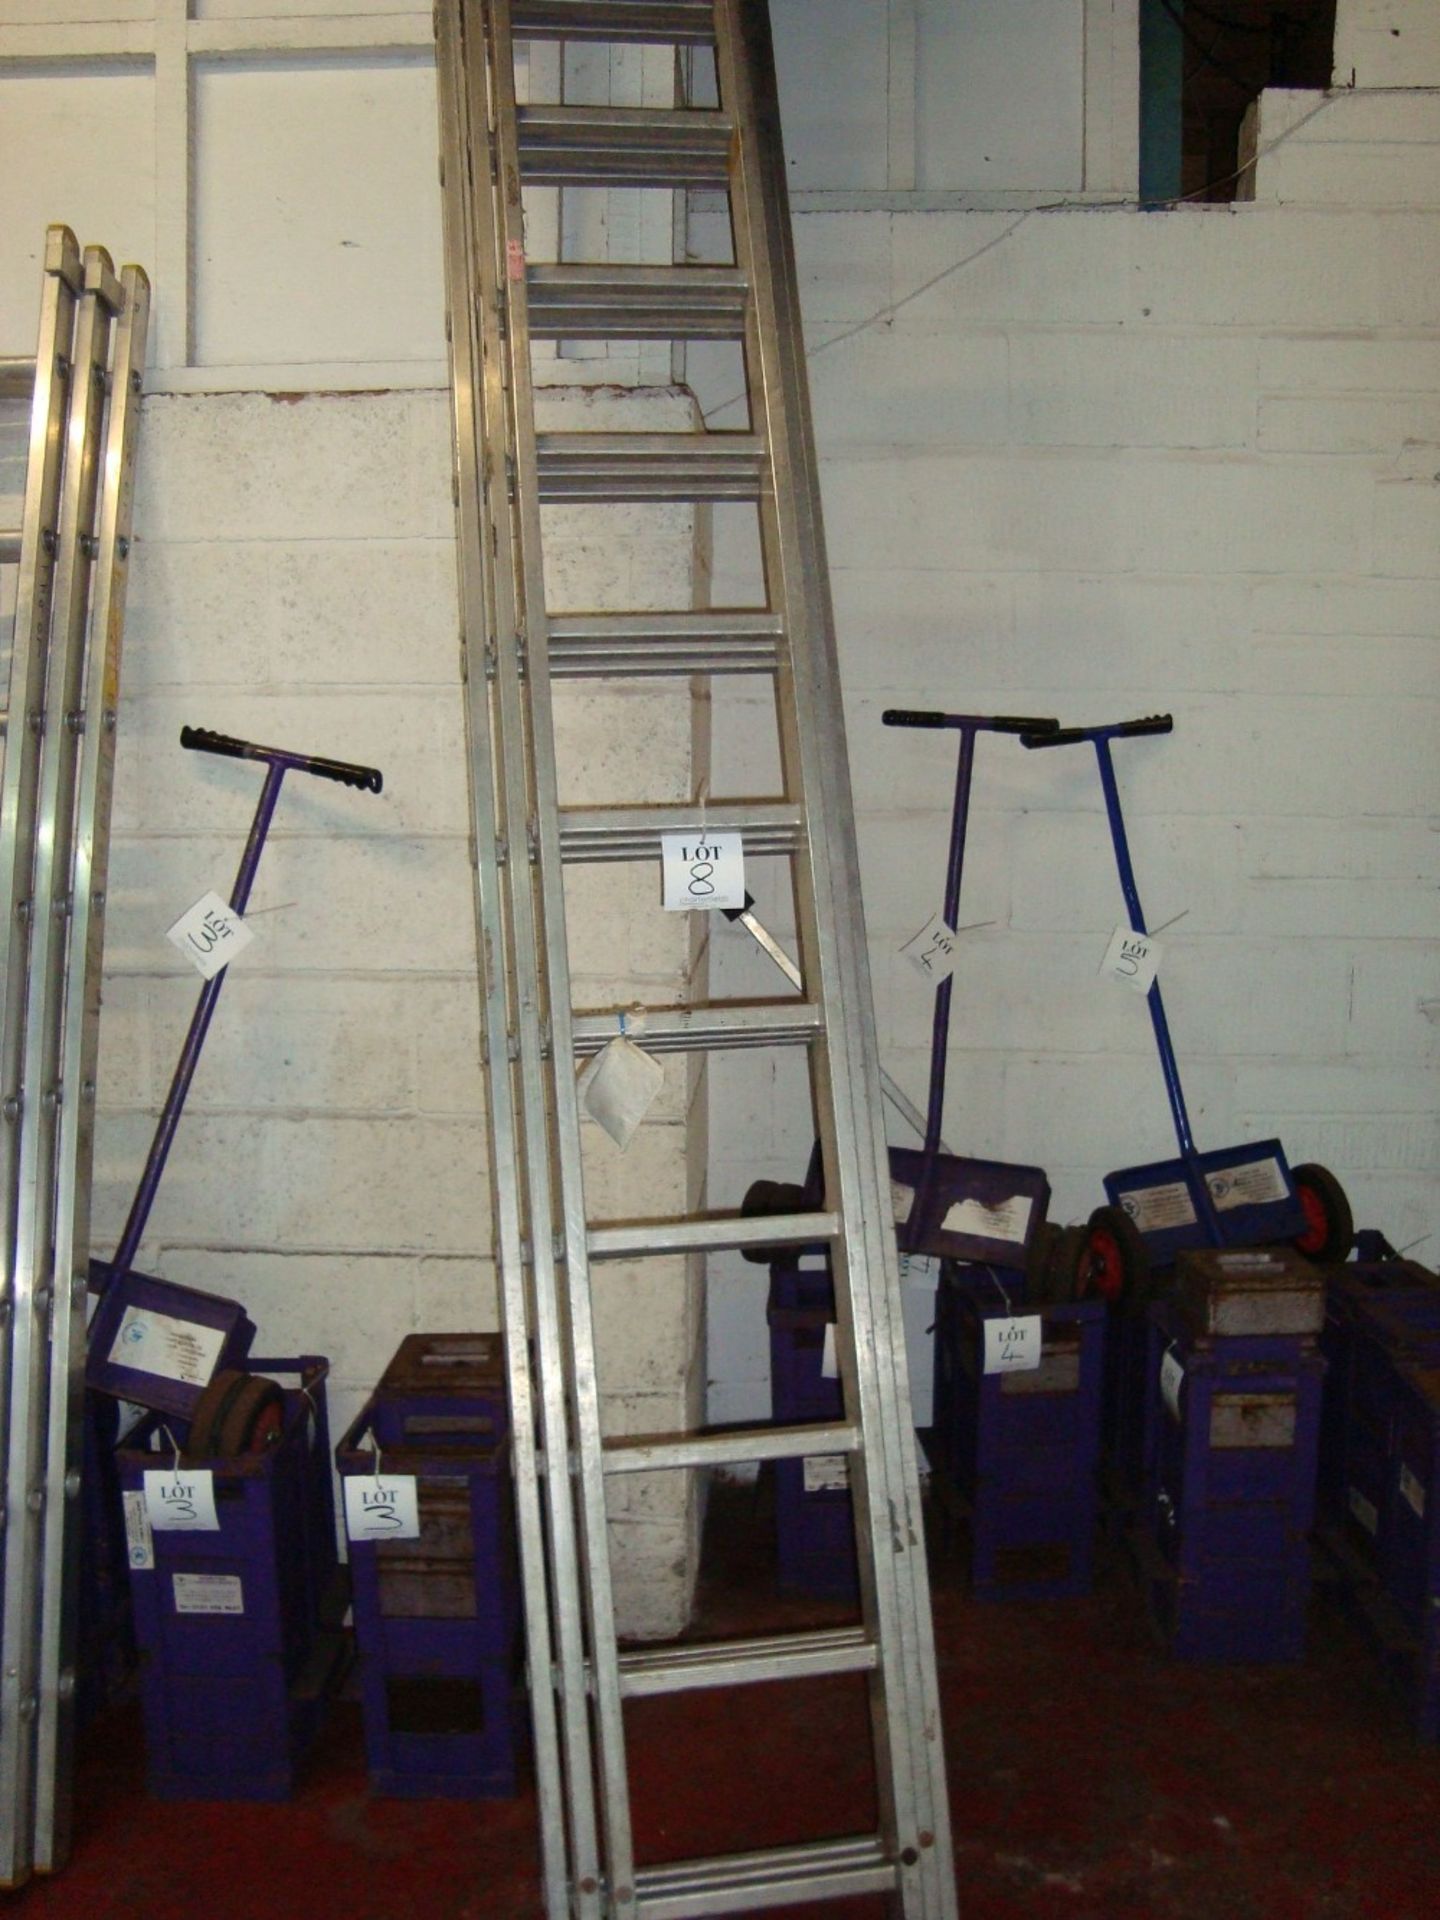 A Youngman Combi 200 alloy extending ladder